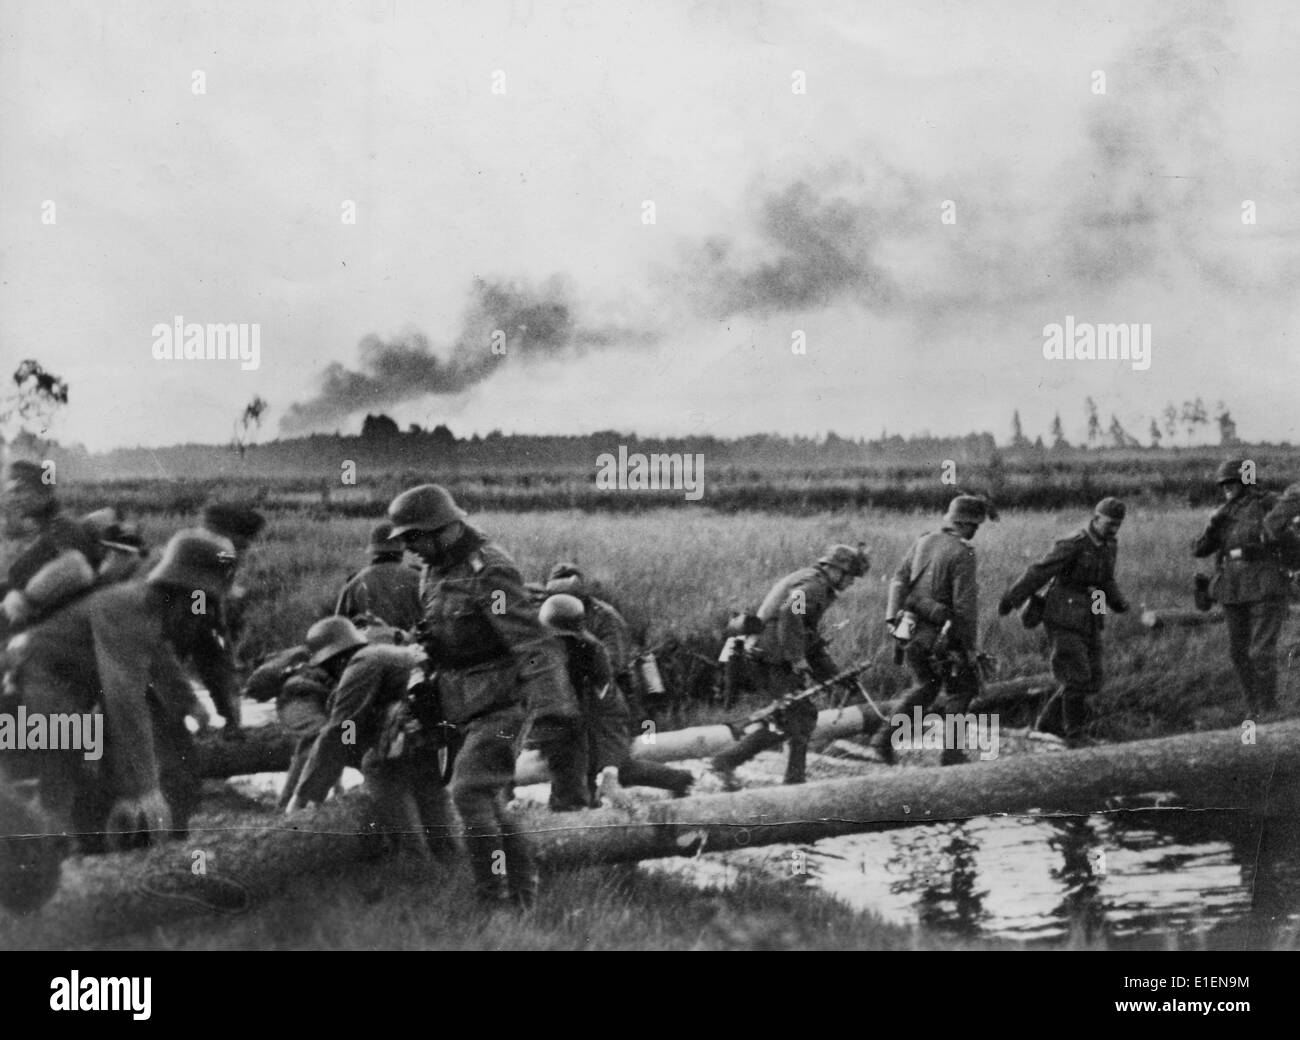 1941 год нападение германии на ссср. Войска вермахта пересекают границу СССР. 22 Июня 1941 река Буг. Немецкие солдаты 22 июня 1941.